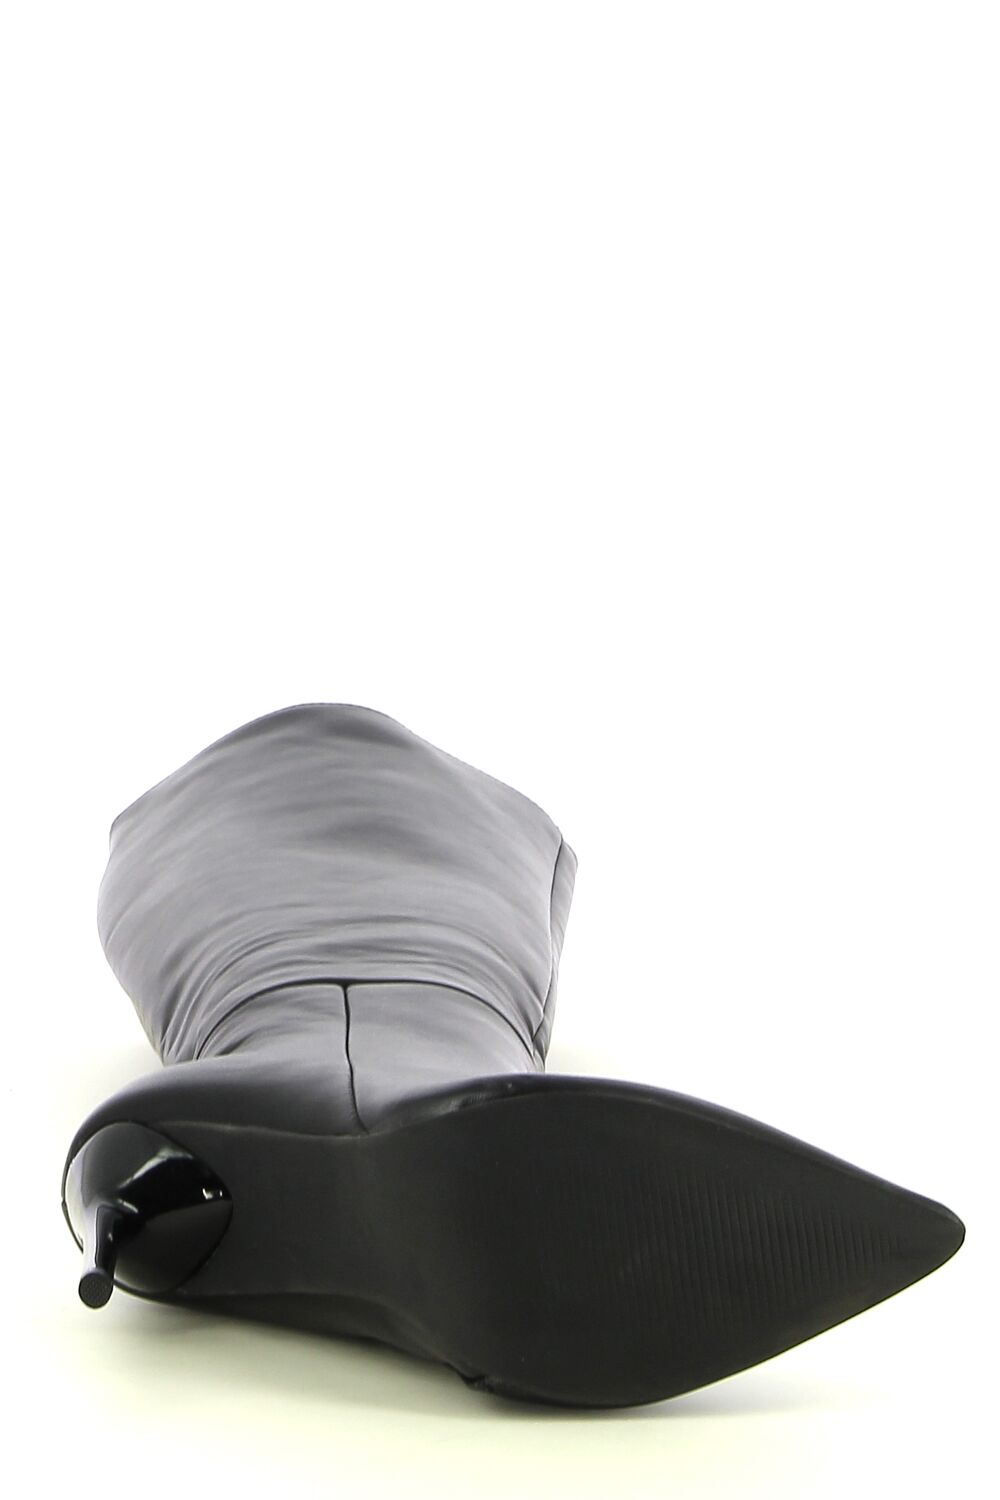 Ken Shoe Fashion - Noir - Bottillions